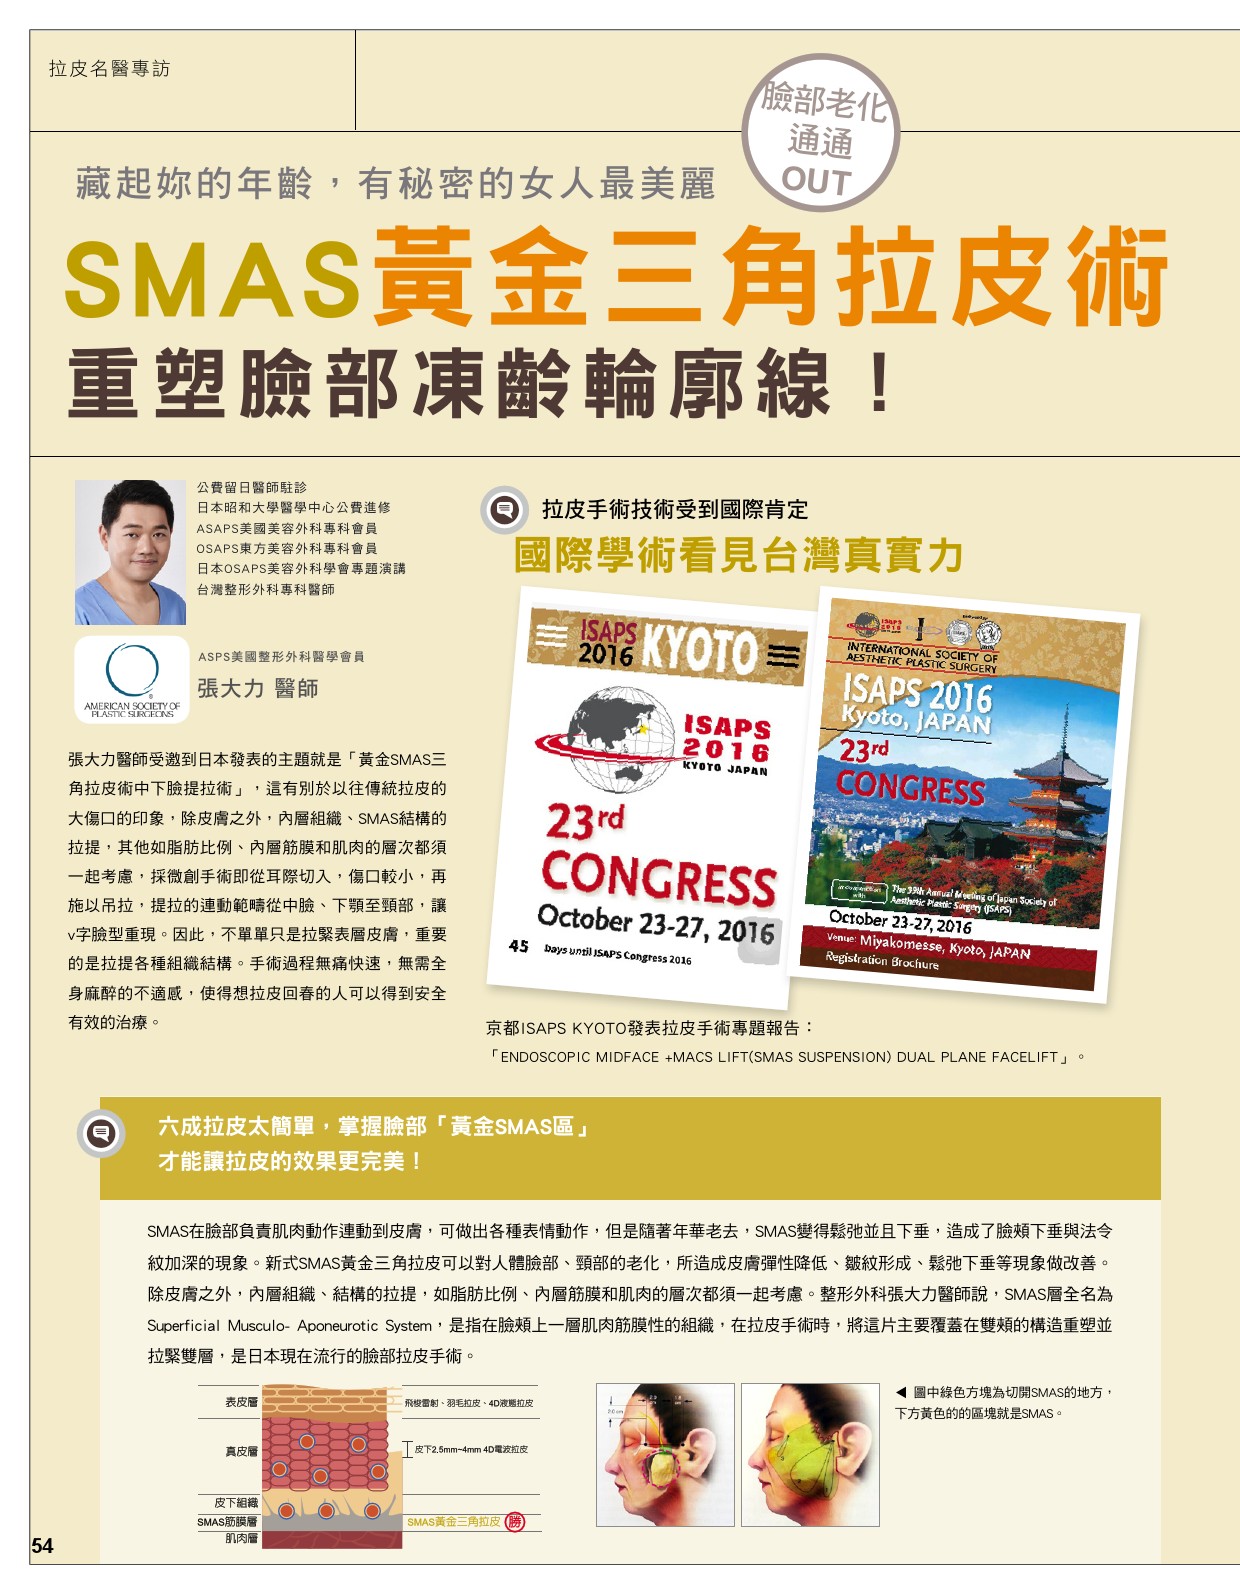 SMAS黃金三角拉皮 重塑臉部凍齡輪廓線-雜誌專訪-張大力-整形名醫-東京風采